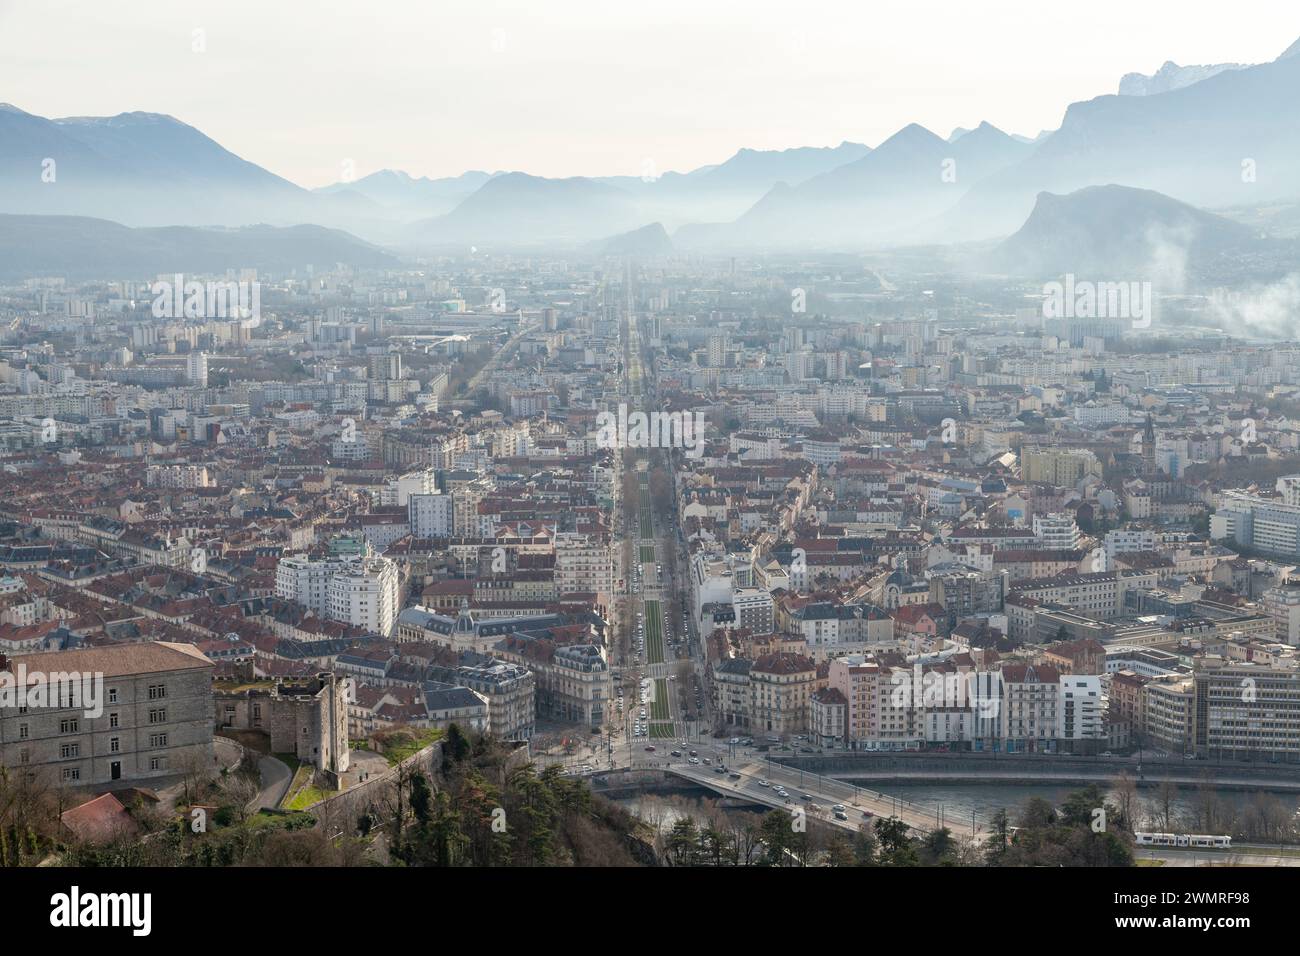 Grenoble nella regione dell'Alvernia-Rhône-Alpes nel sud-est della Francia. Foto Stock